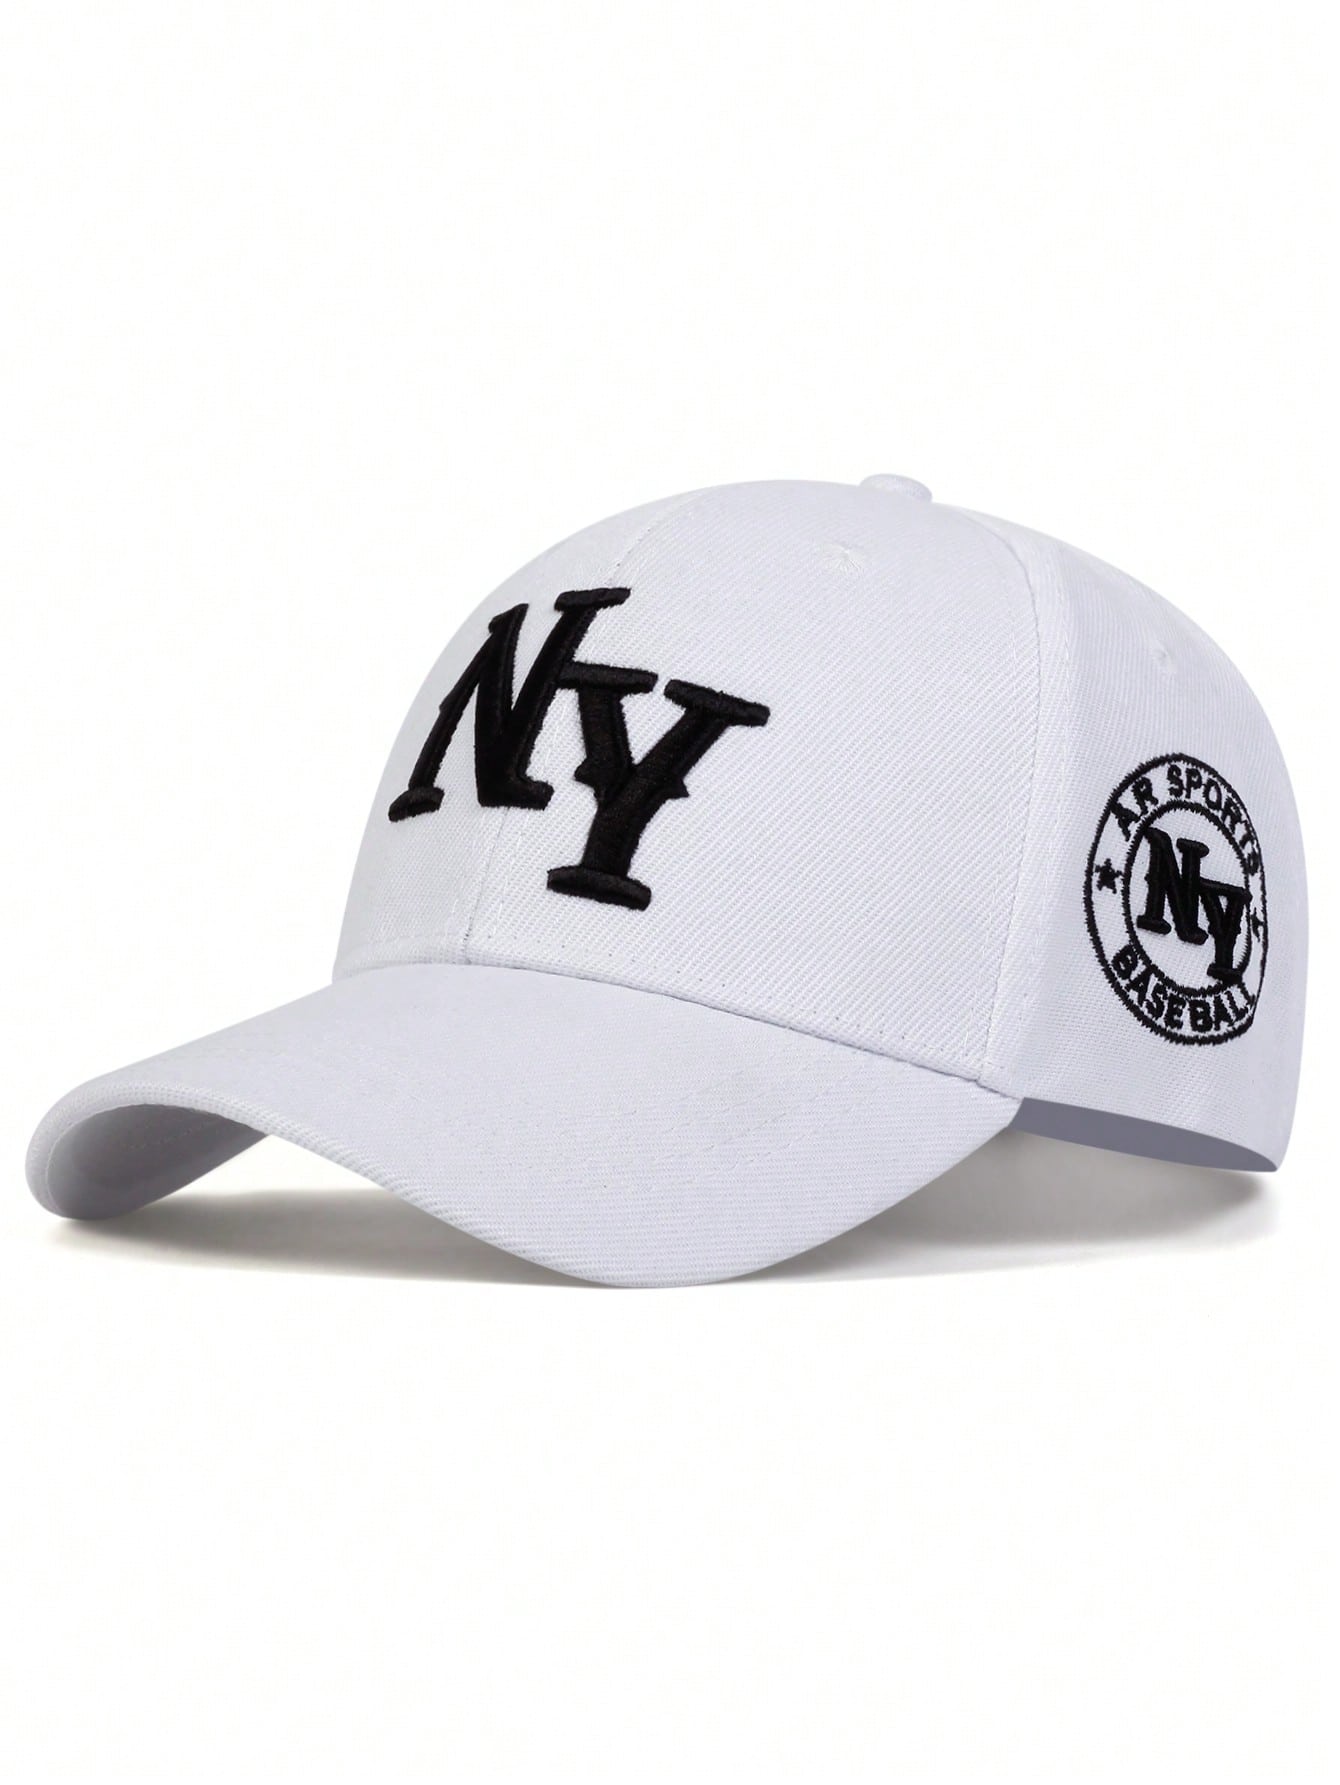 1 шт. мужская бейсболка с вышивкой букв «Нью-Йорк», белый мужская бейсболка летняя спортивная солнцезащитная бейсболка для улицы модная крутая быстросохнущая сетчатая кепка